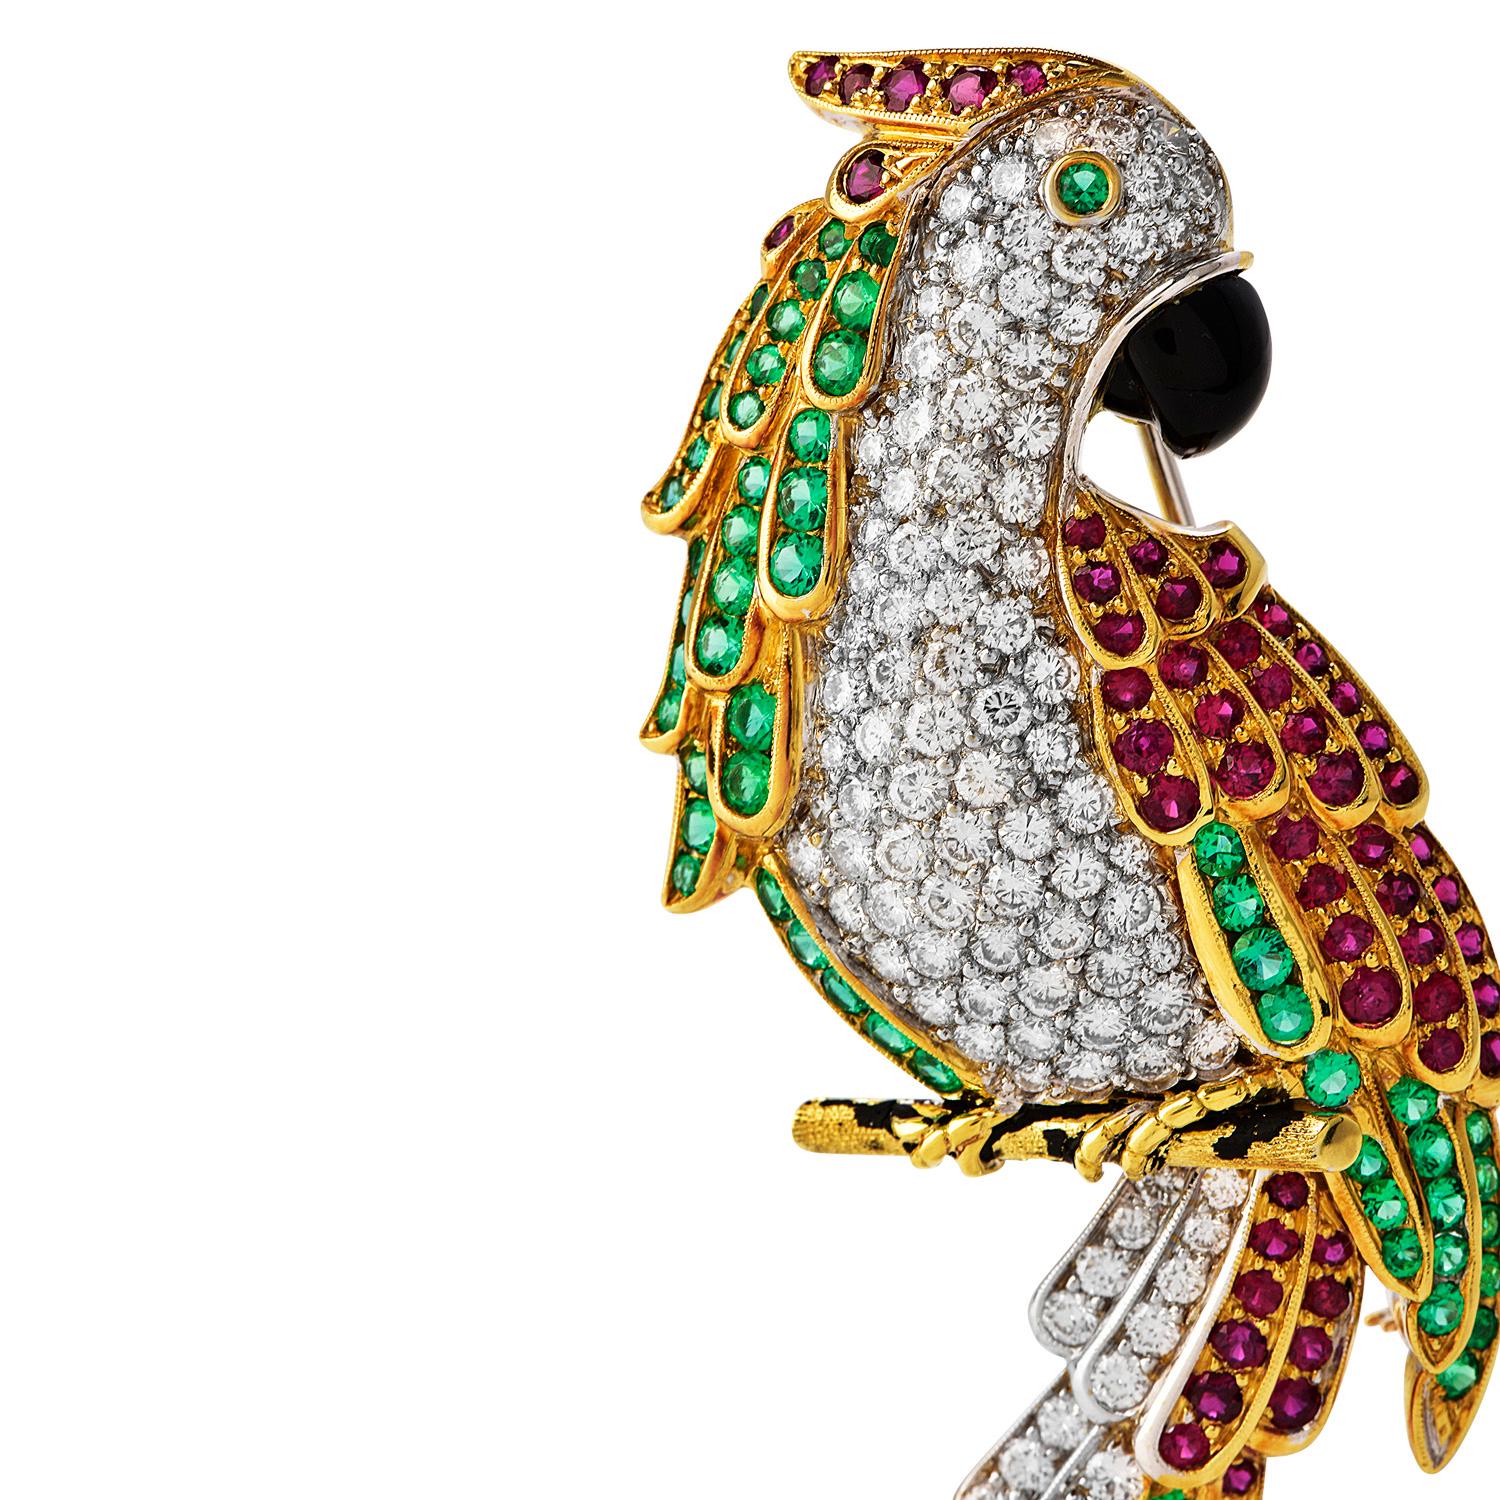 Vintage Diamant Rubin Smaragd Onyx18K Gold Papagei Pin Brosche

Sehen Sie das Leben in lebendigen Farben mit diesen exquisiten Diamanten, Rubinen, Smaragden und  Onyx18K Gold Elegant Papagei Pin Brosche

mit einem ungefähren Gesamtgewicht von 23,7